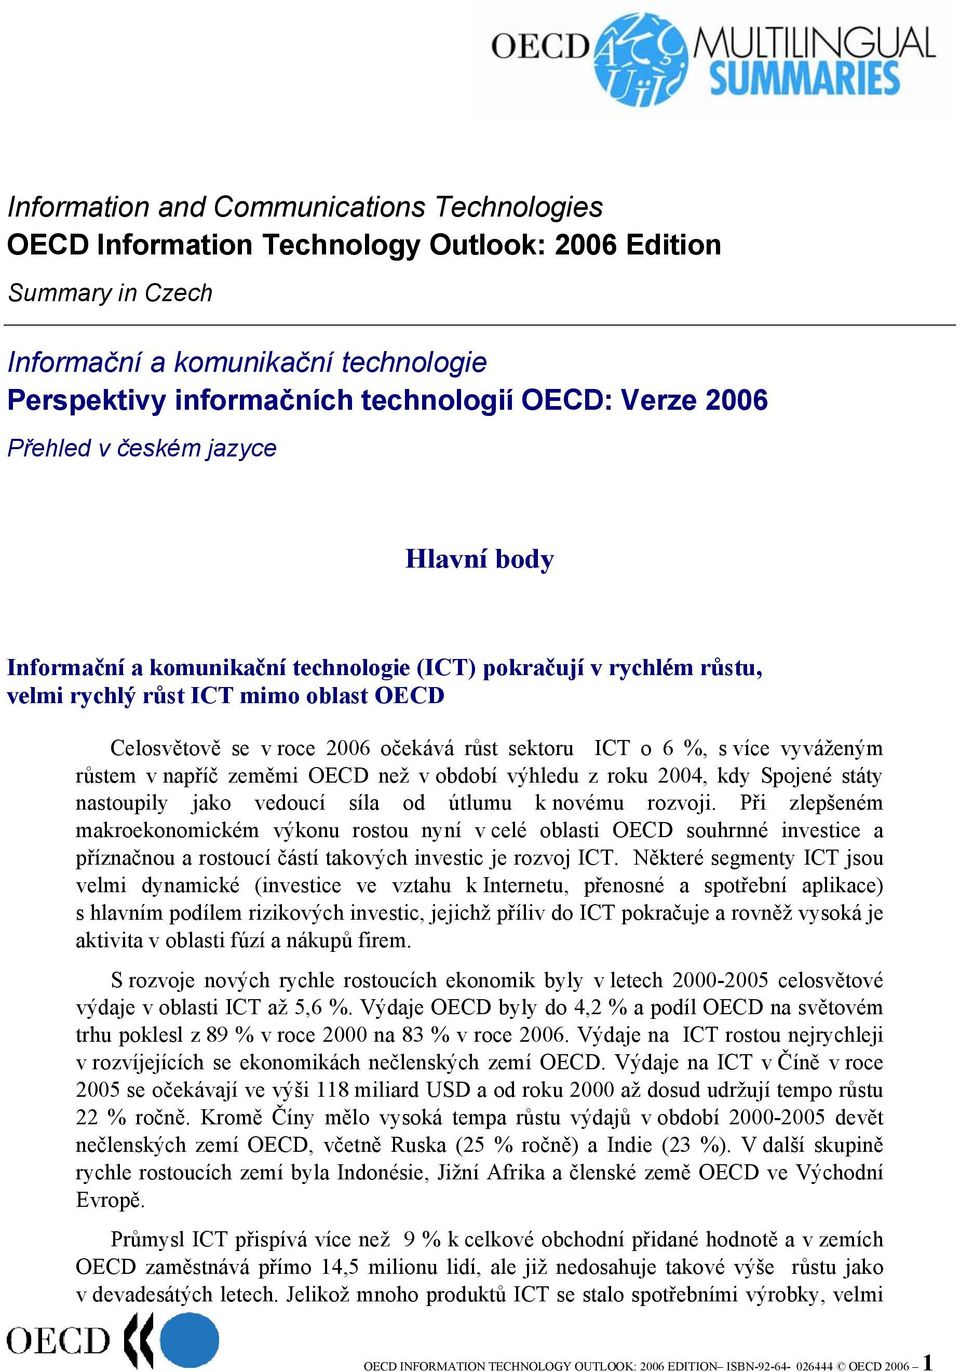 ICT o 6 %, s více vyváženým růstem v napříč zeměmi OECD než v období výhledu z roku 2004, kdy Spojené státy nastoupily jako vedoucí síla od útlumu k novému rozvoji.